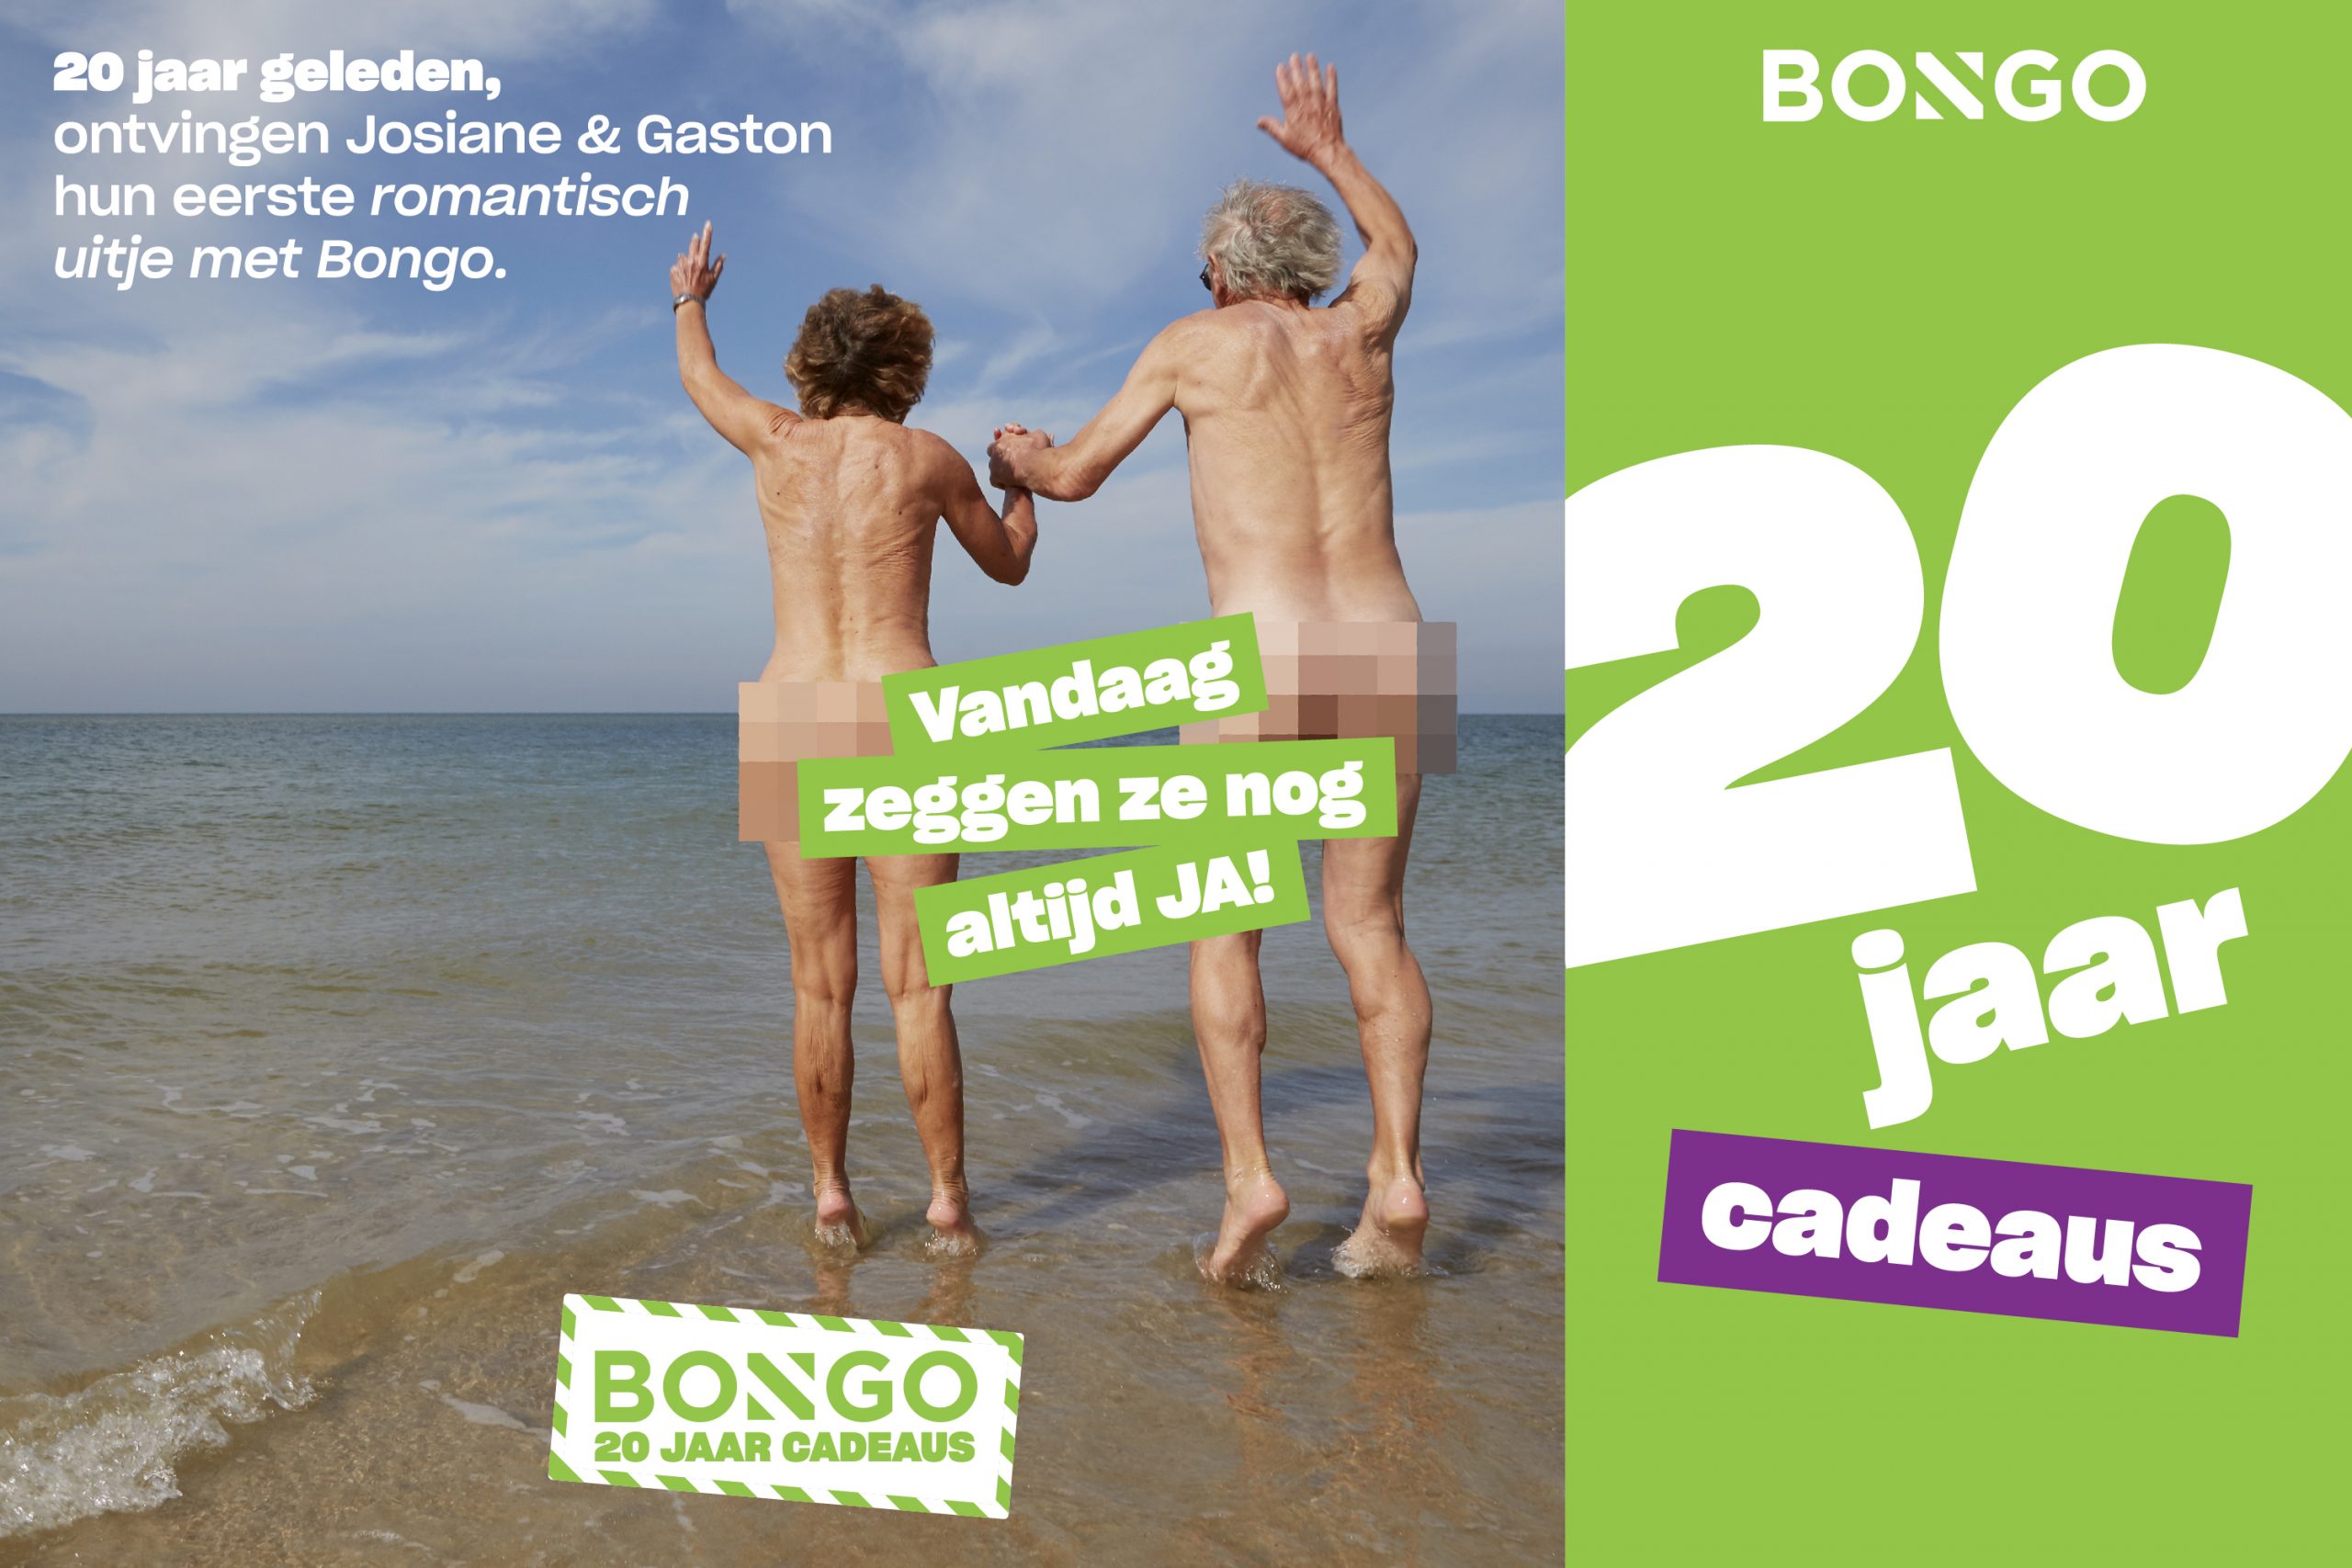 Affiche campagne Bongo couple nu sur la plage en flamand